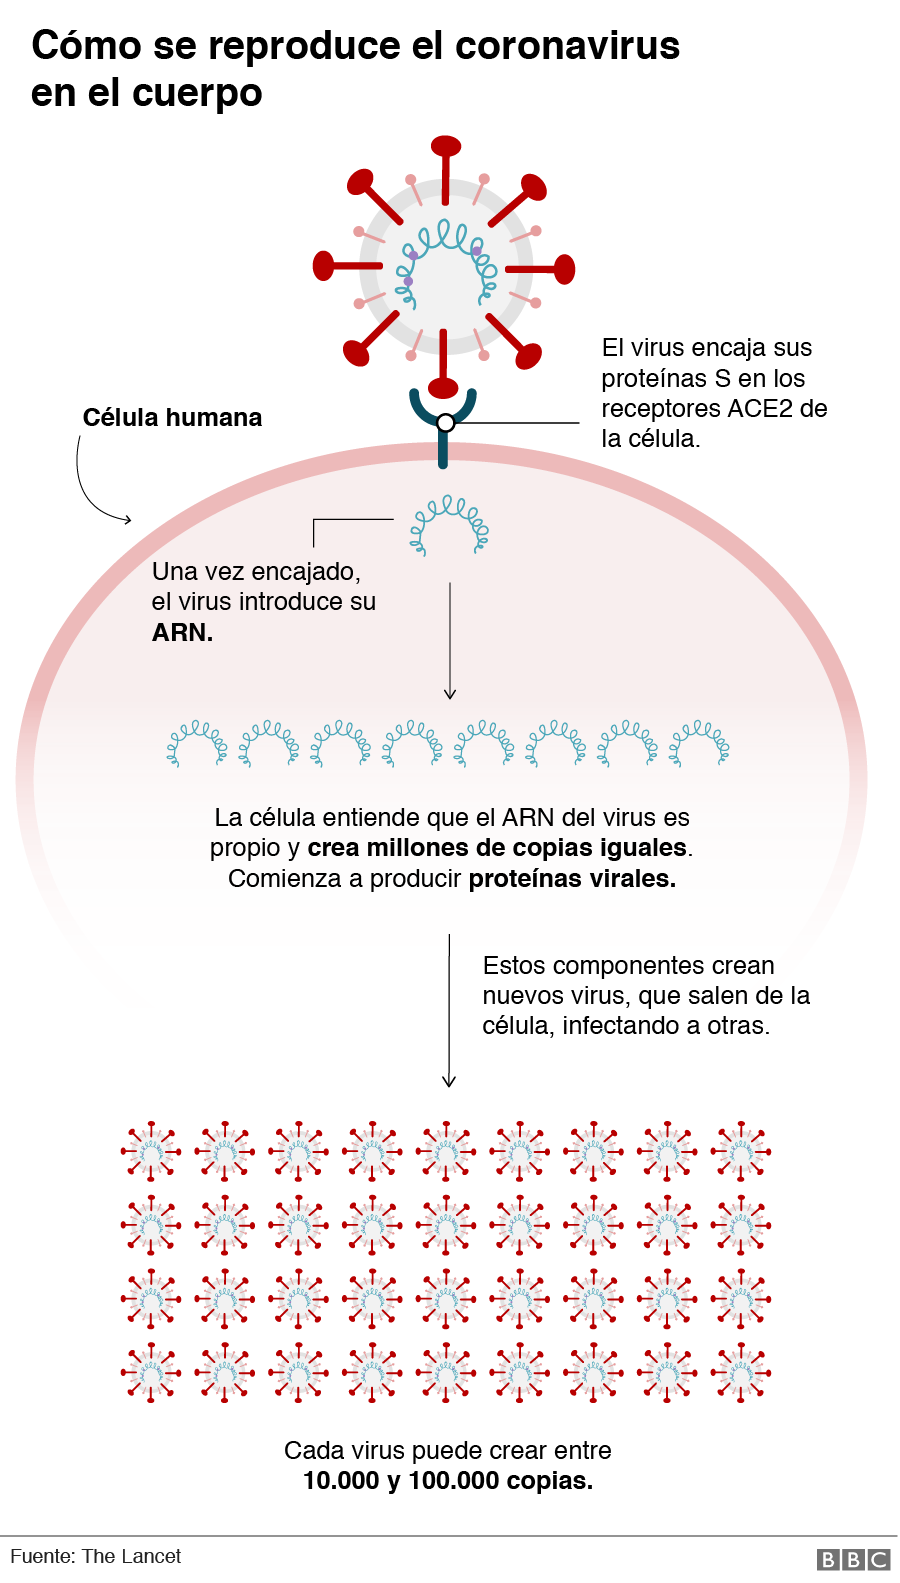 Gráfico de cómo se reproduce el coronavirus en el cuerpo.